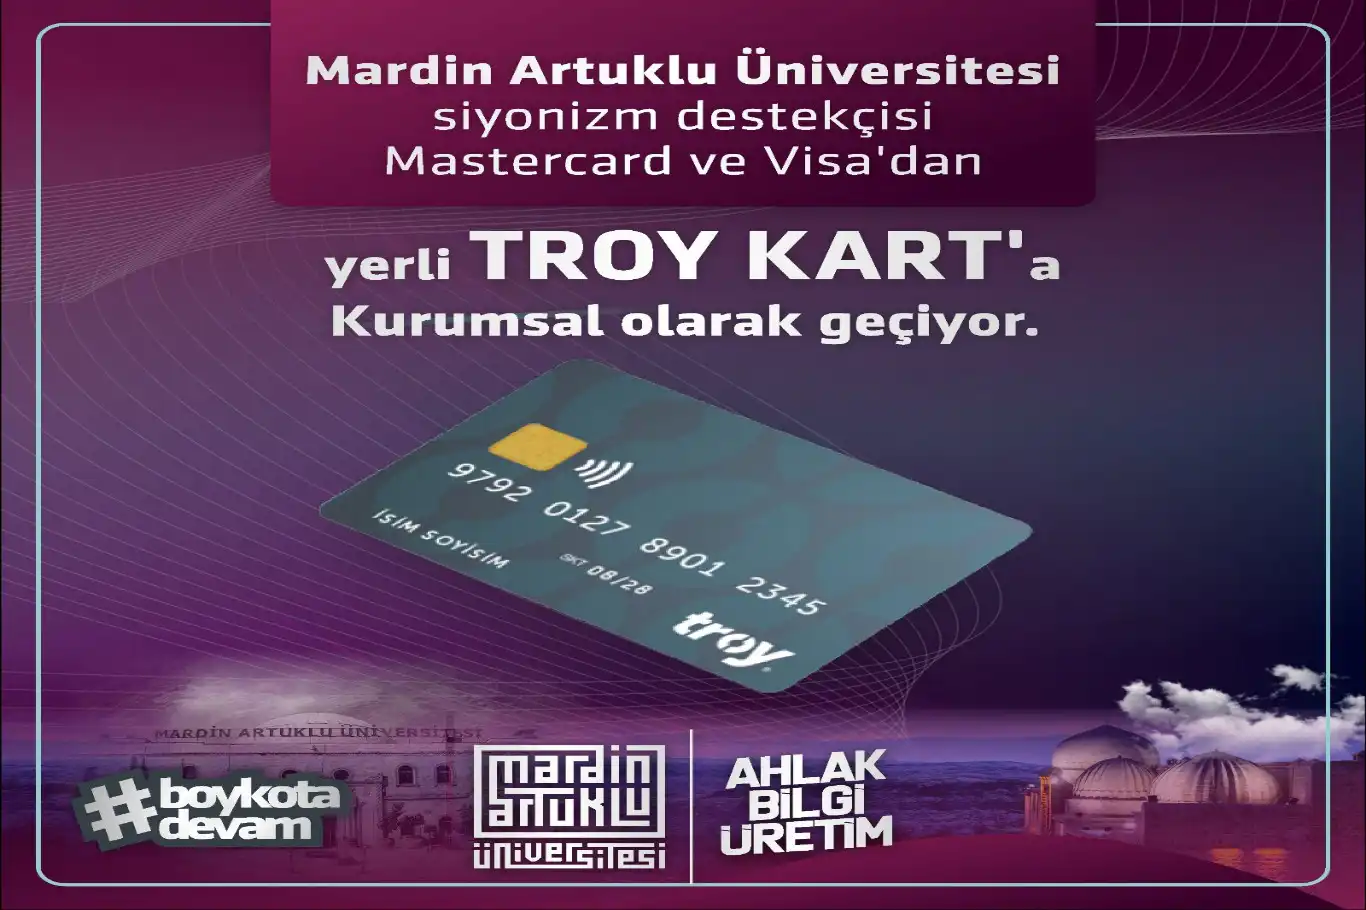 Mardin Artuklu Üniversitesinde yerli TROY Kart dönemi başlıyor